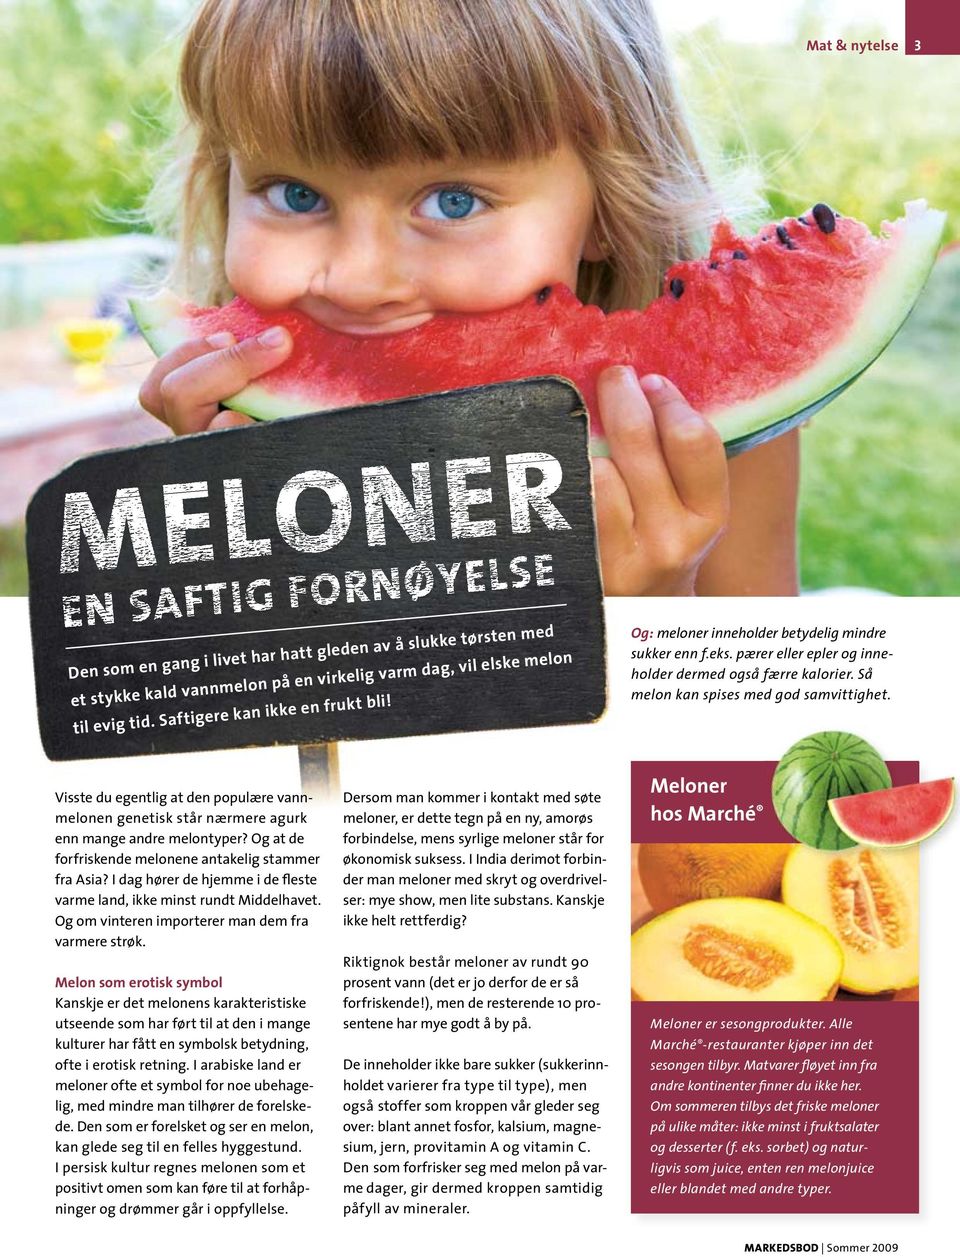 Visste du egentlig at den populære vannmelonen genetisk står nærmere agurk enn mange andre melontyper? Og at de forfriskende melonene antakelig stammer fra Asia?